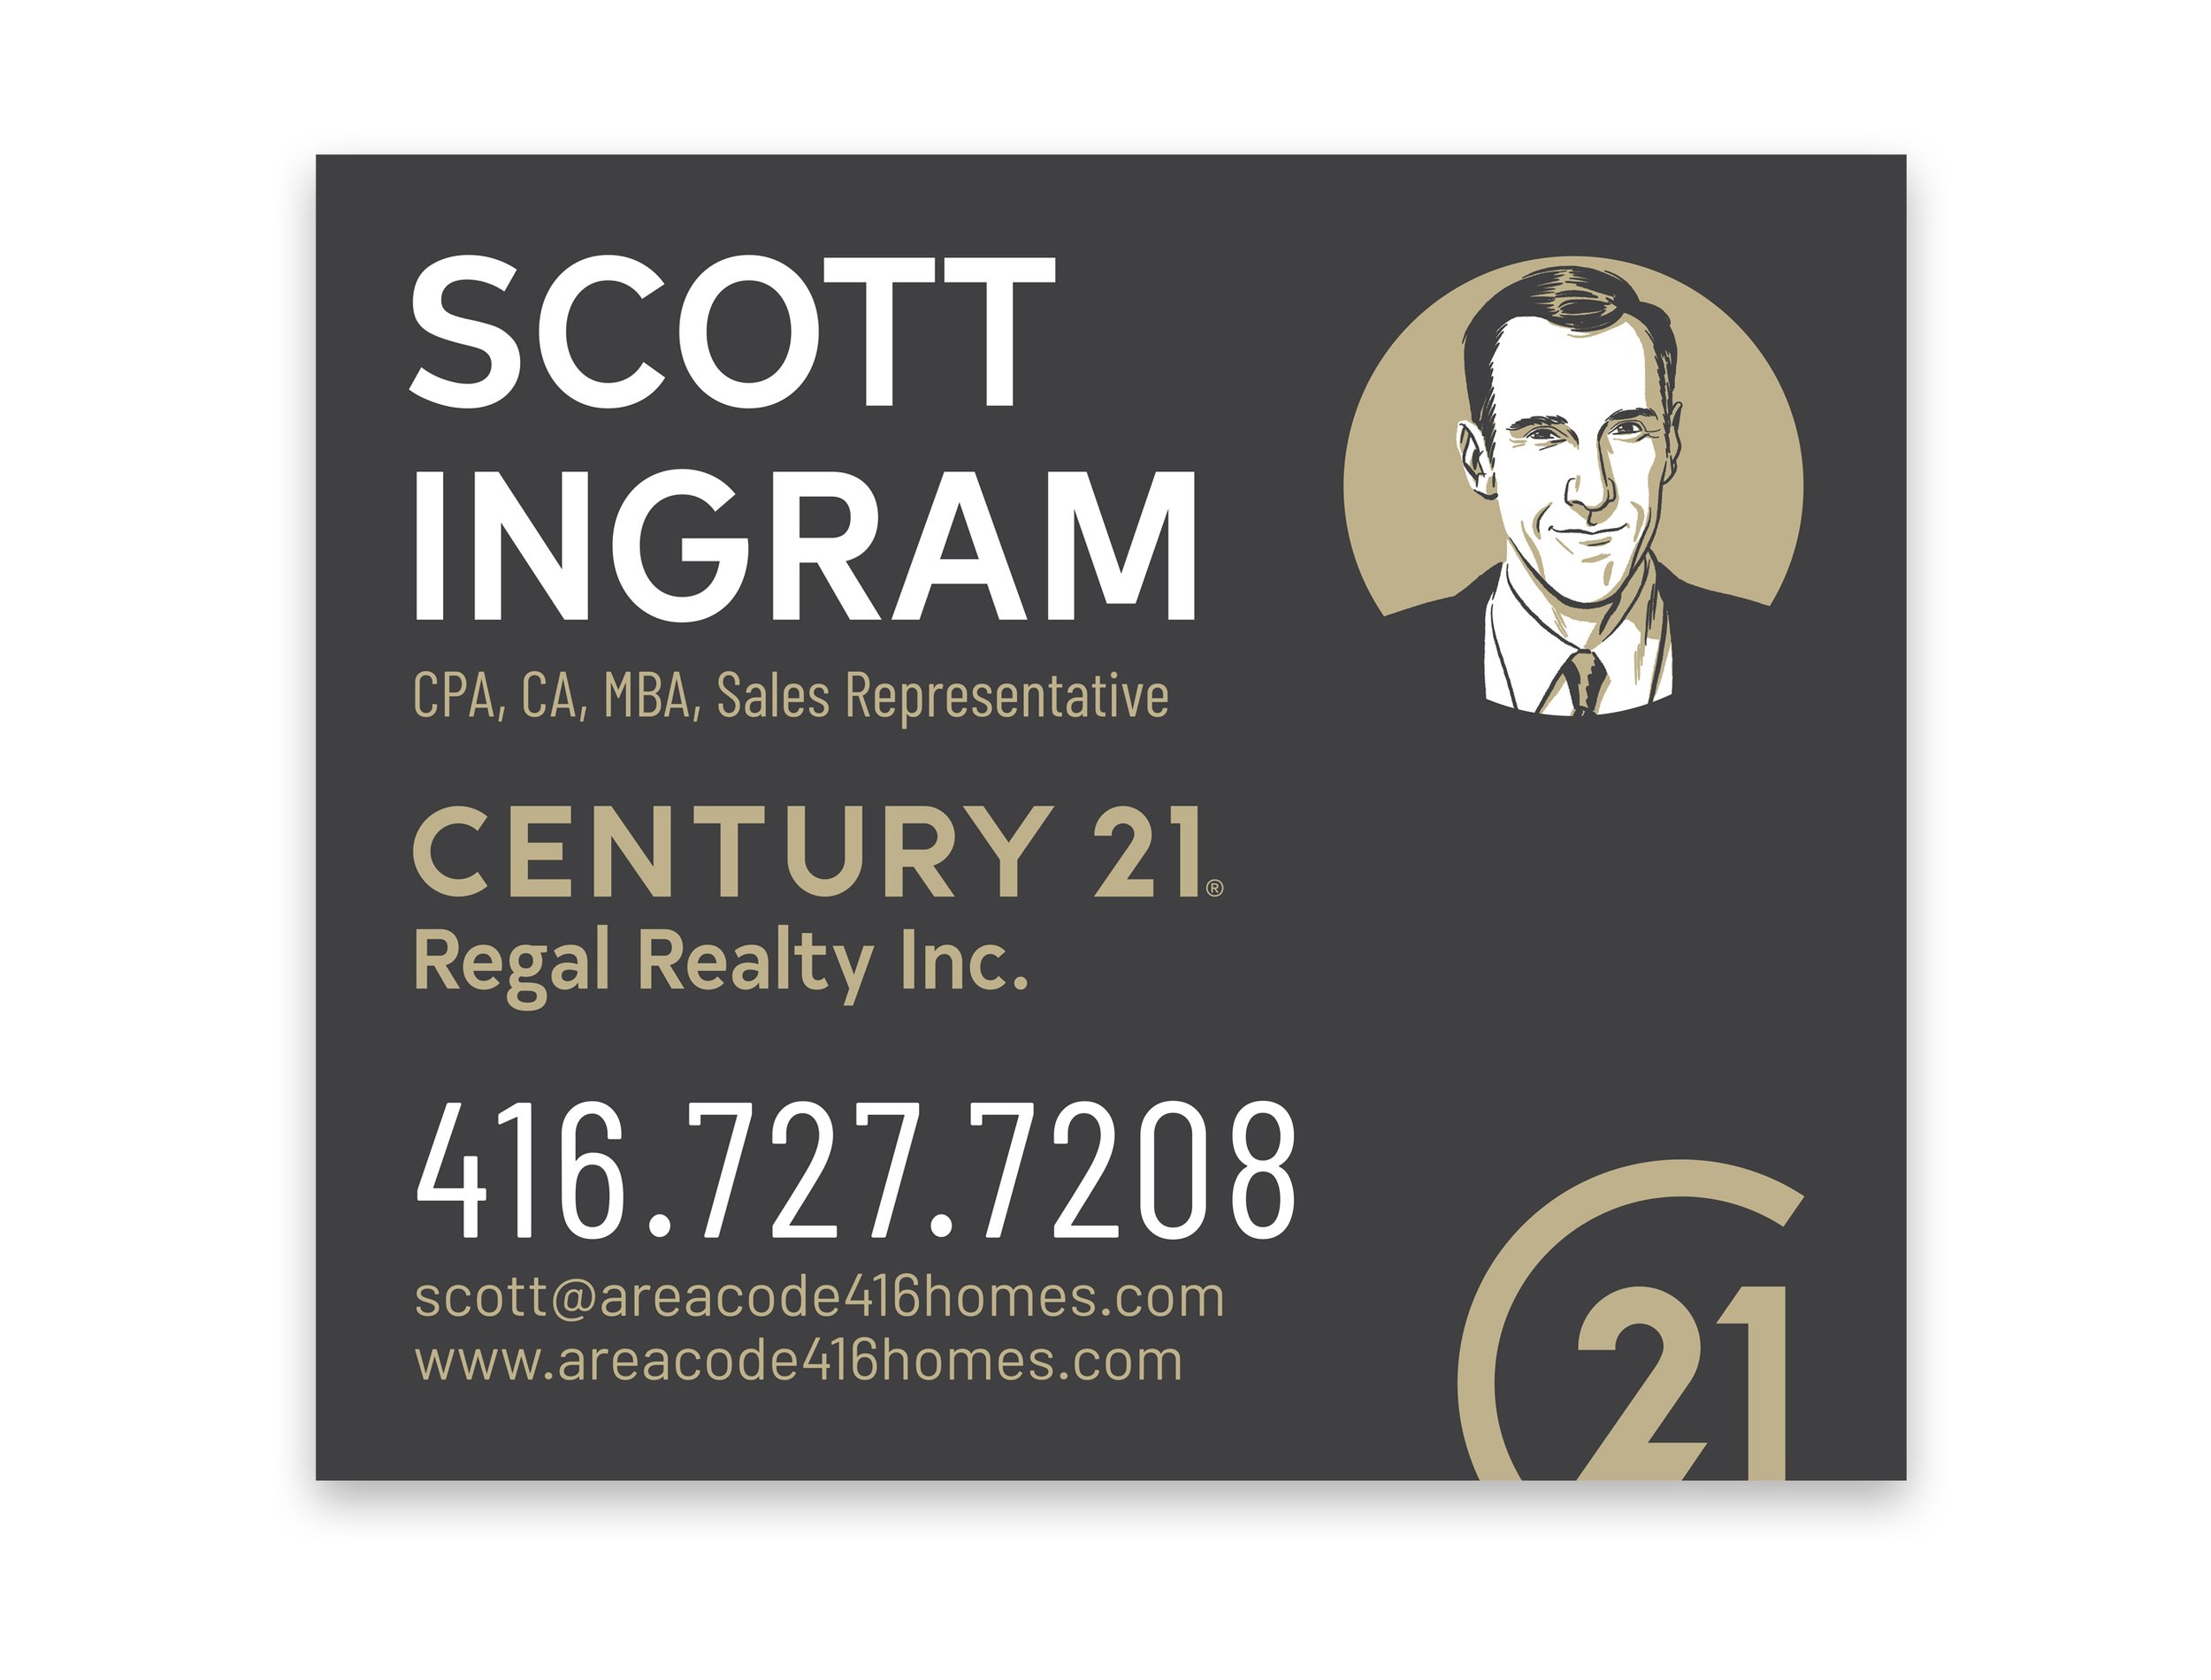 ScottIngramC21-signage2.jpg